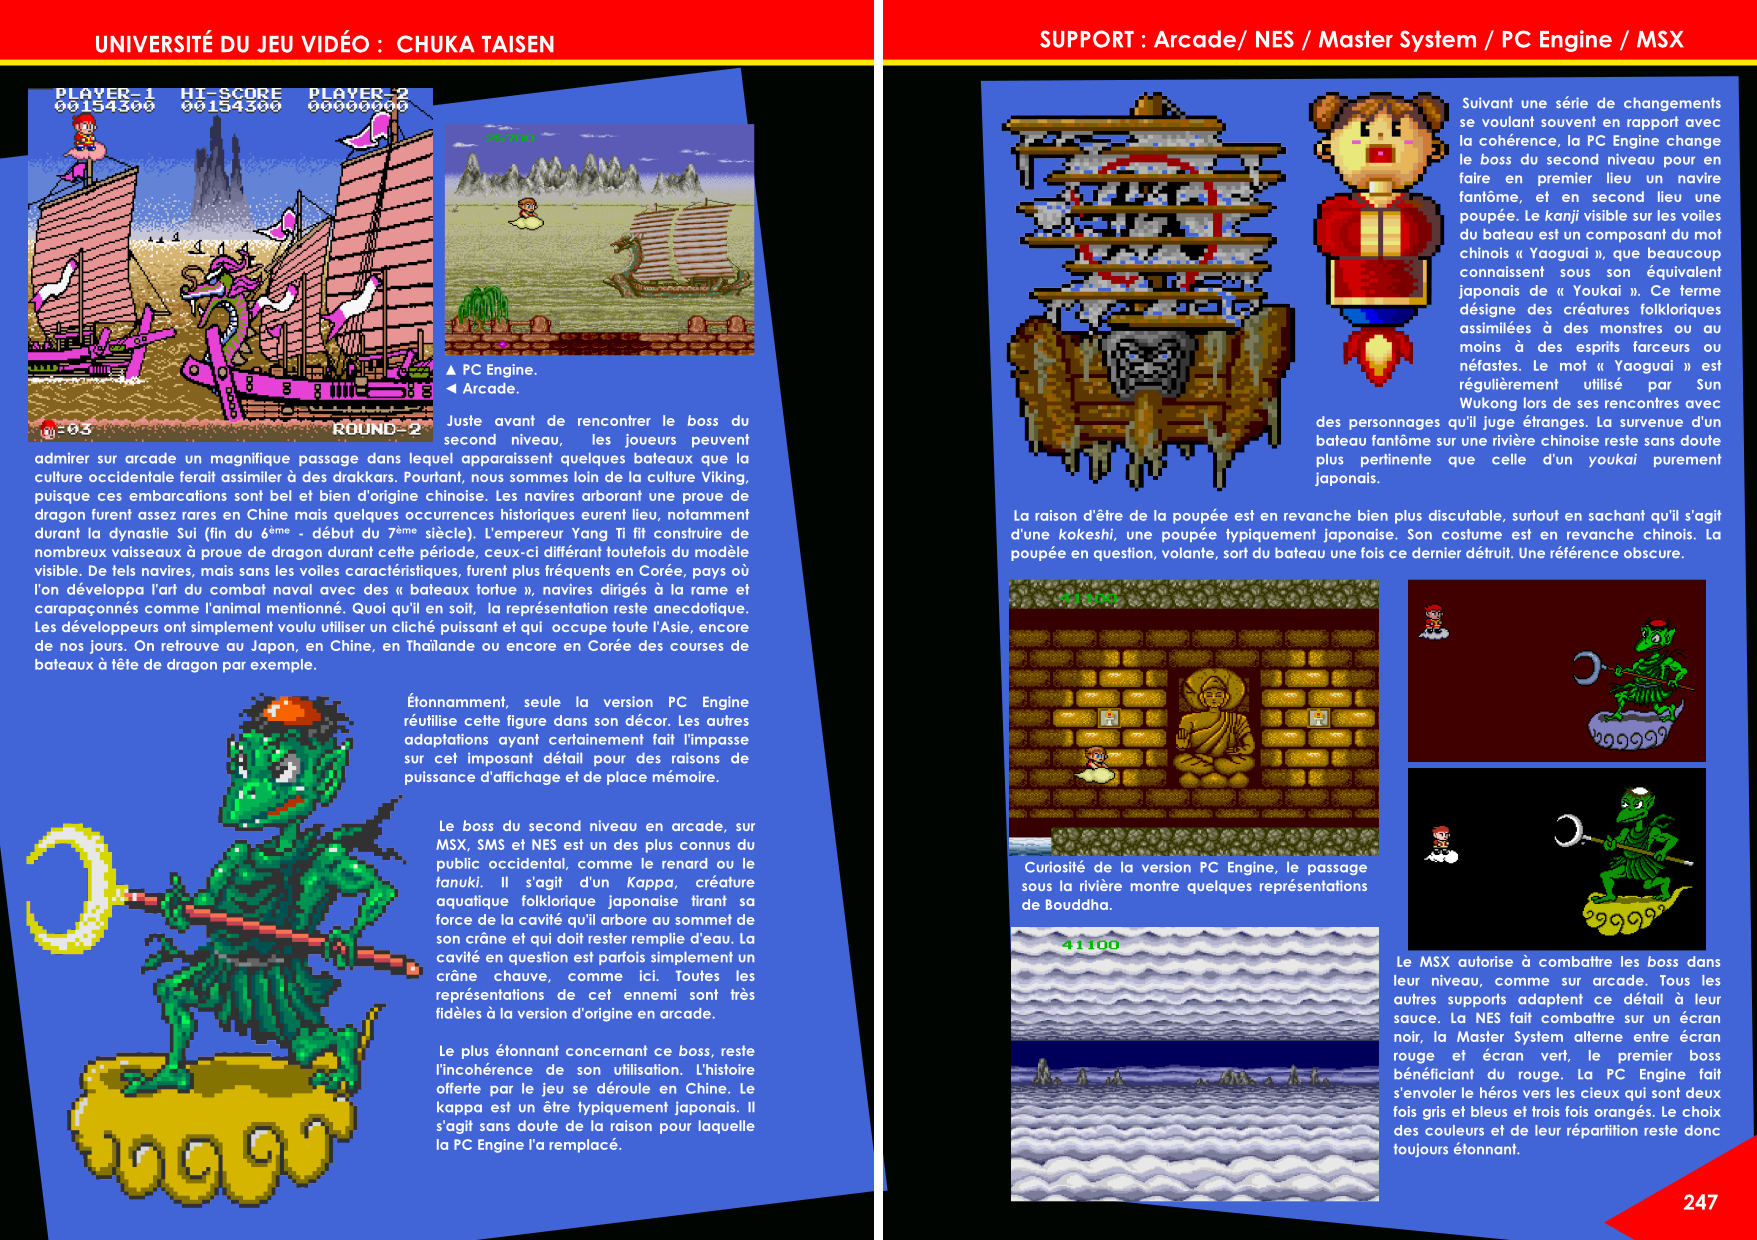 Chuka Taisen Arcade, Famicom, NES, Master System, PC-Engine et Master System article de Côté Gamers